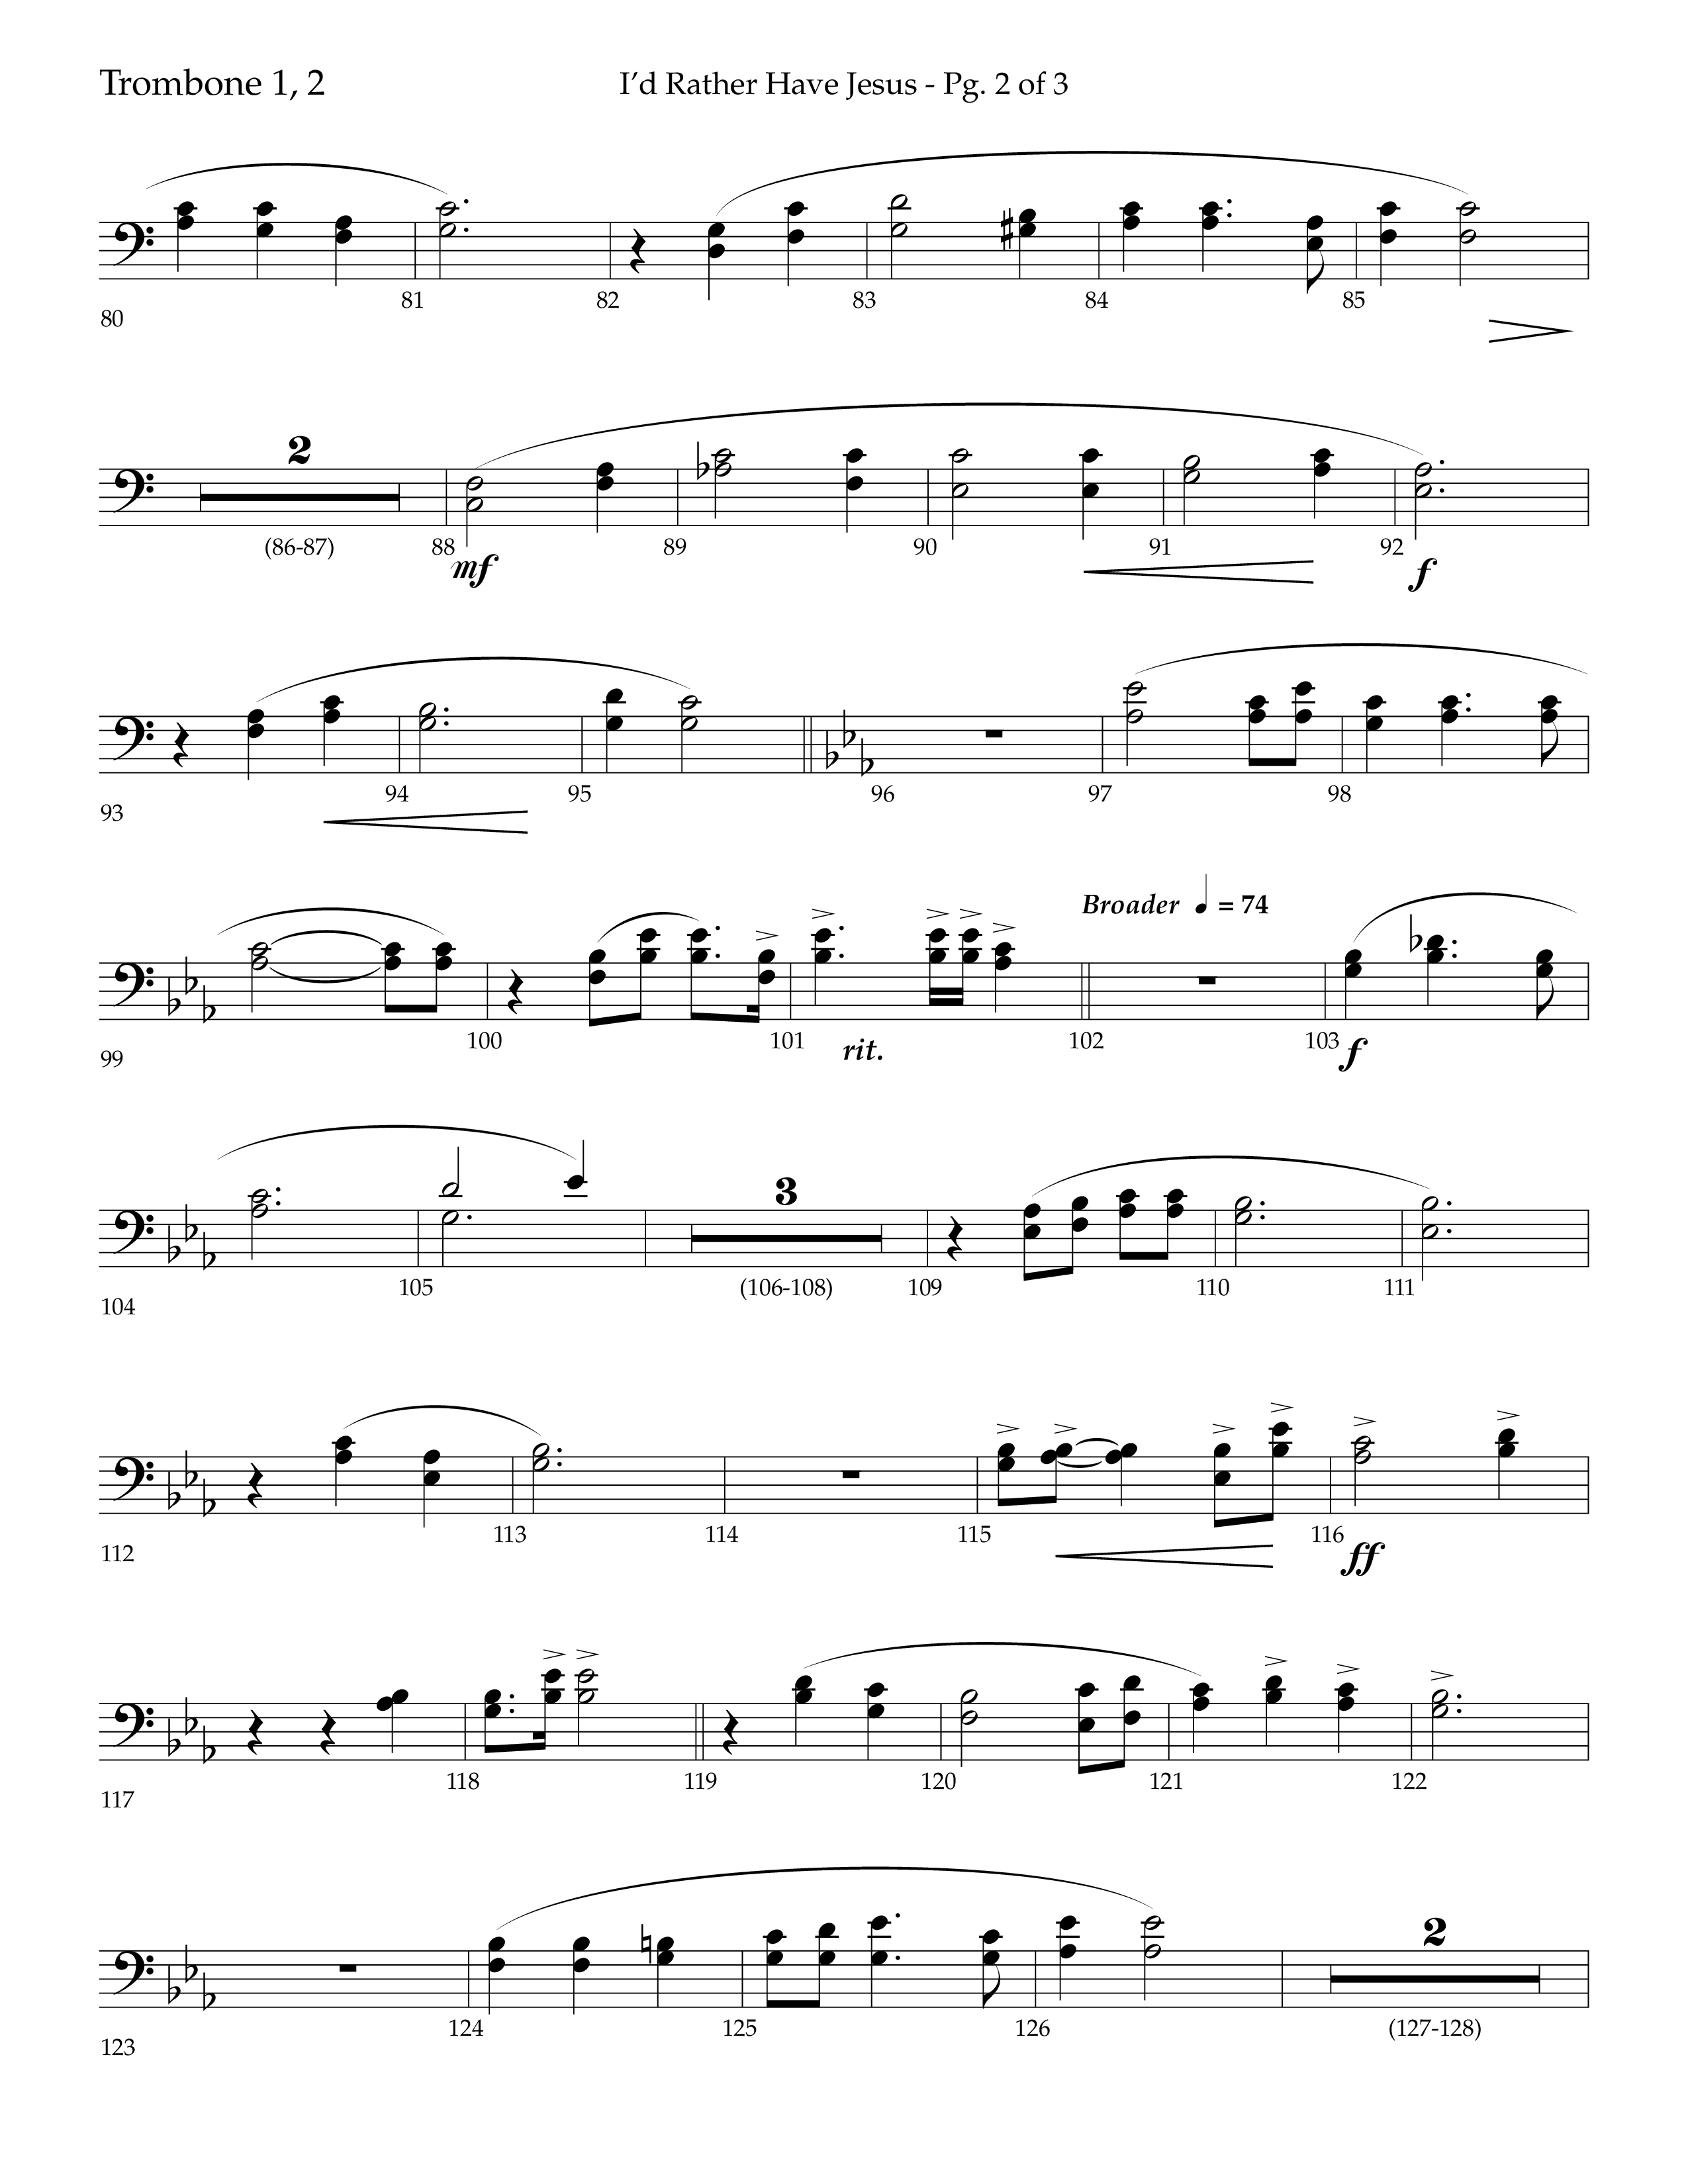 I'd Rather Have Jesus (Choral Anthem SATB) Trombone 1/2 (Lifeway Choral / Arr. Richard Kingsmore)